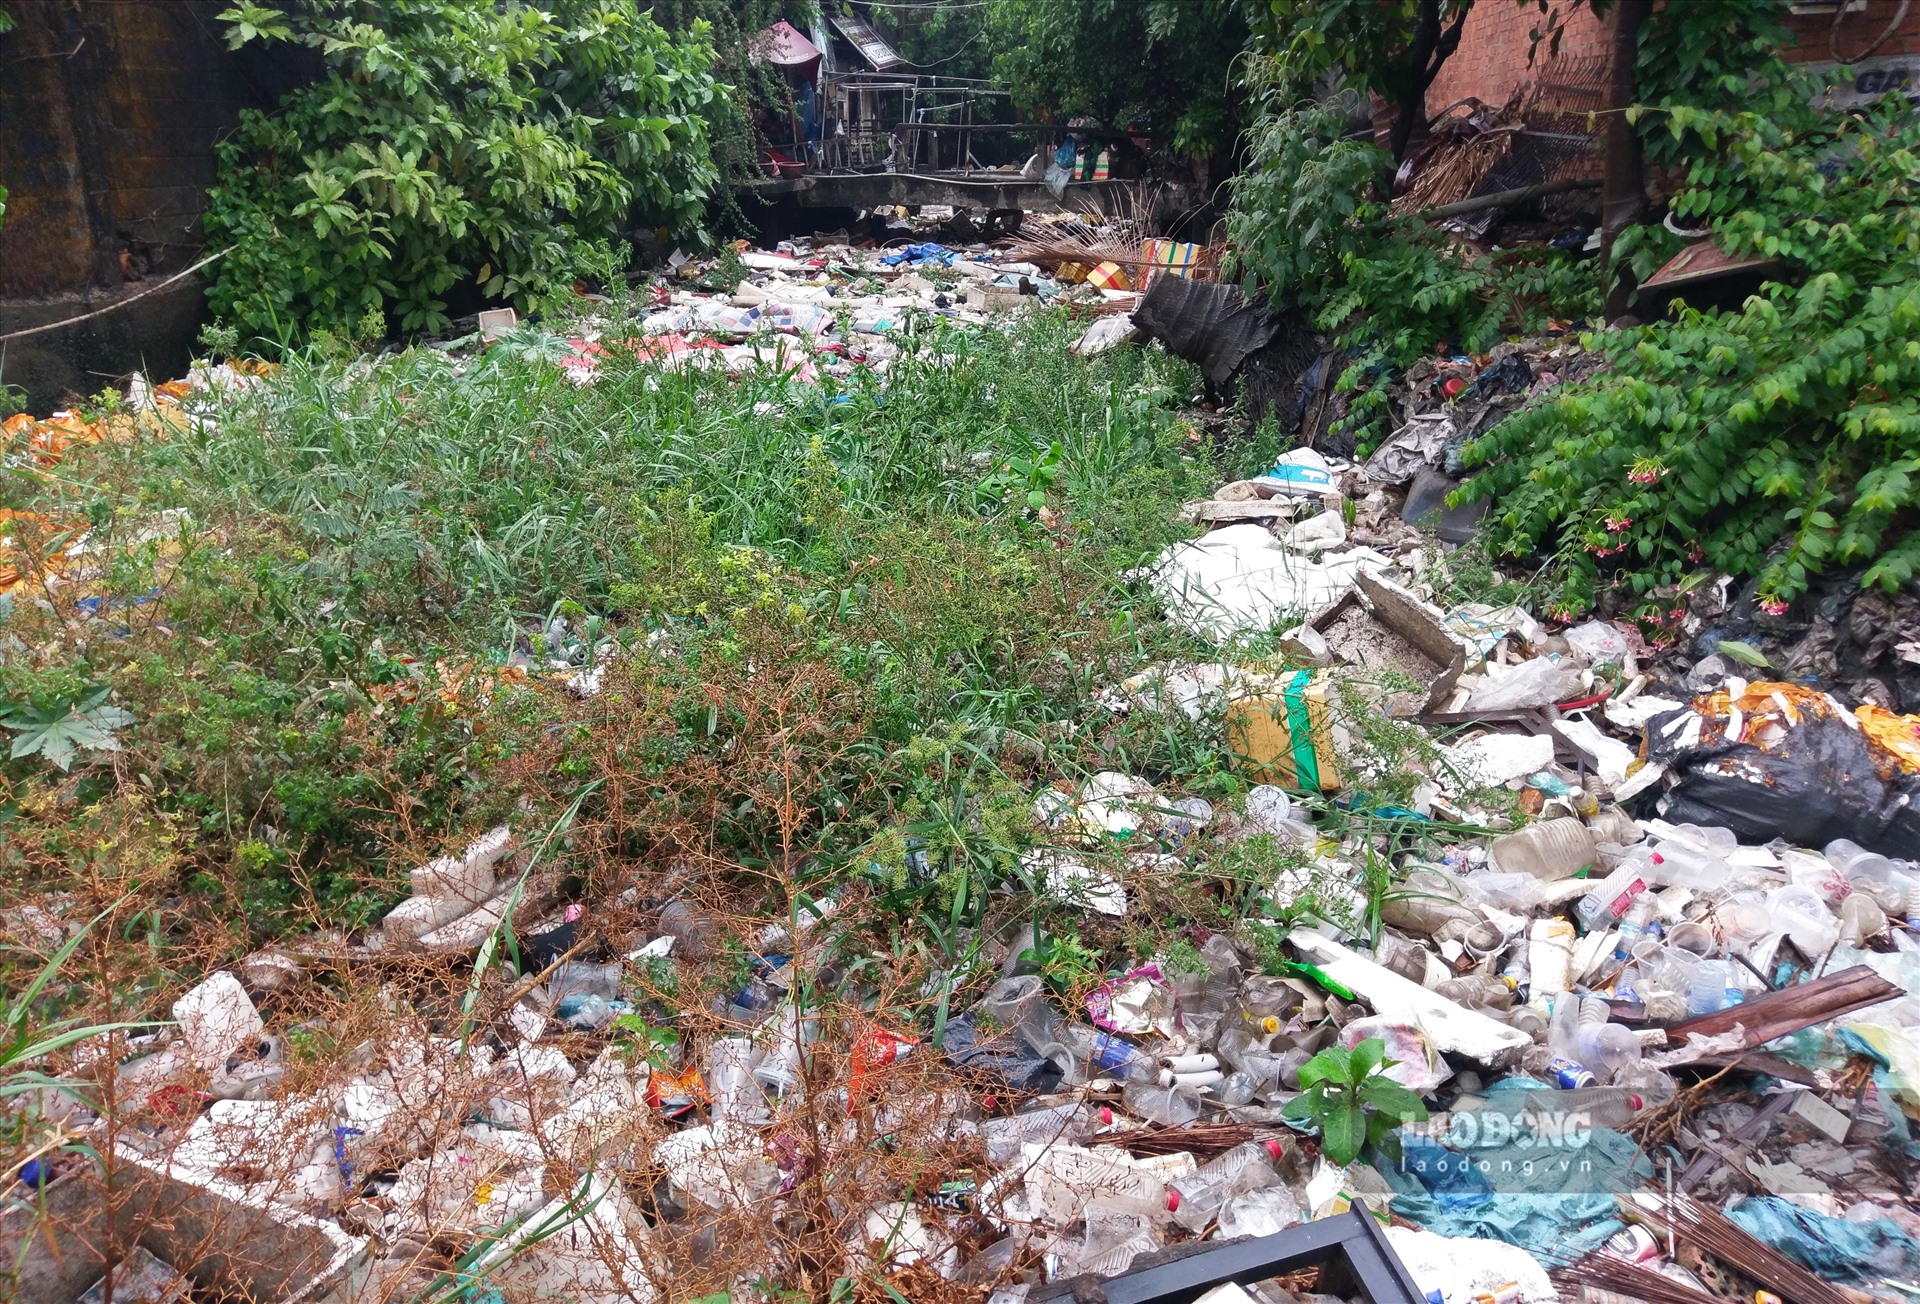 Bà Hoành Thị Lài, đã hơn 20 năm sống tại khu vực này, cho biết rác ngập kín kênh hơn 6 tháng nay nhưng không thấy nhân viên vệ sinh môi trường đến khơi thông. Ảnh: Minh Quân